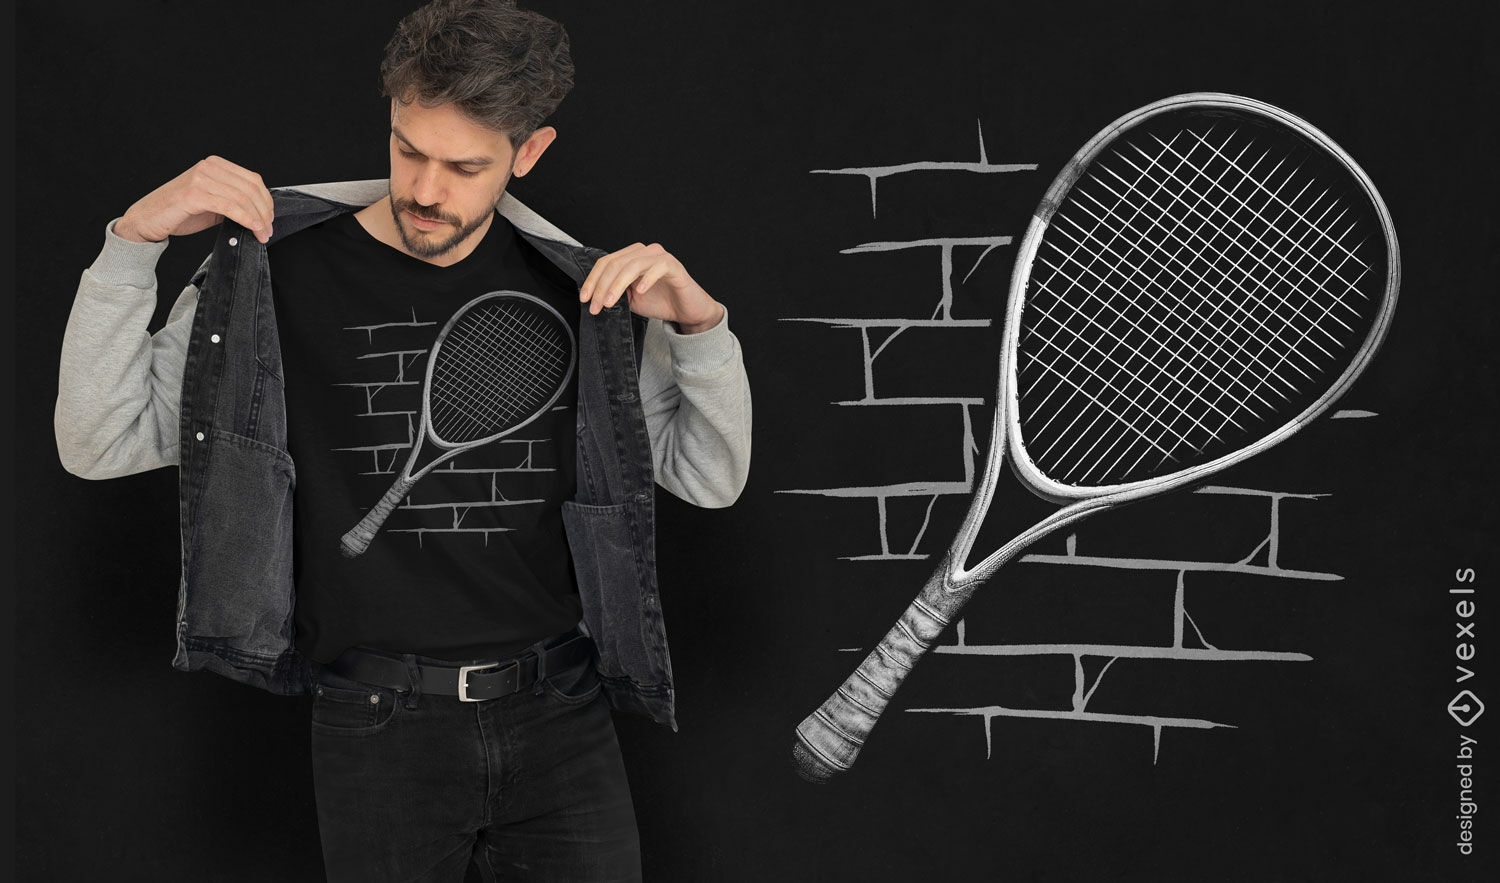 Dise?o de camiseta de raqueta de squash din?mica.